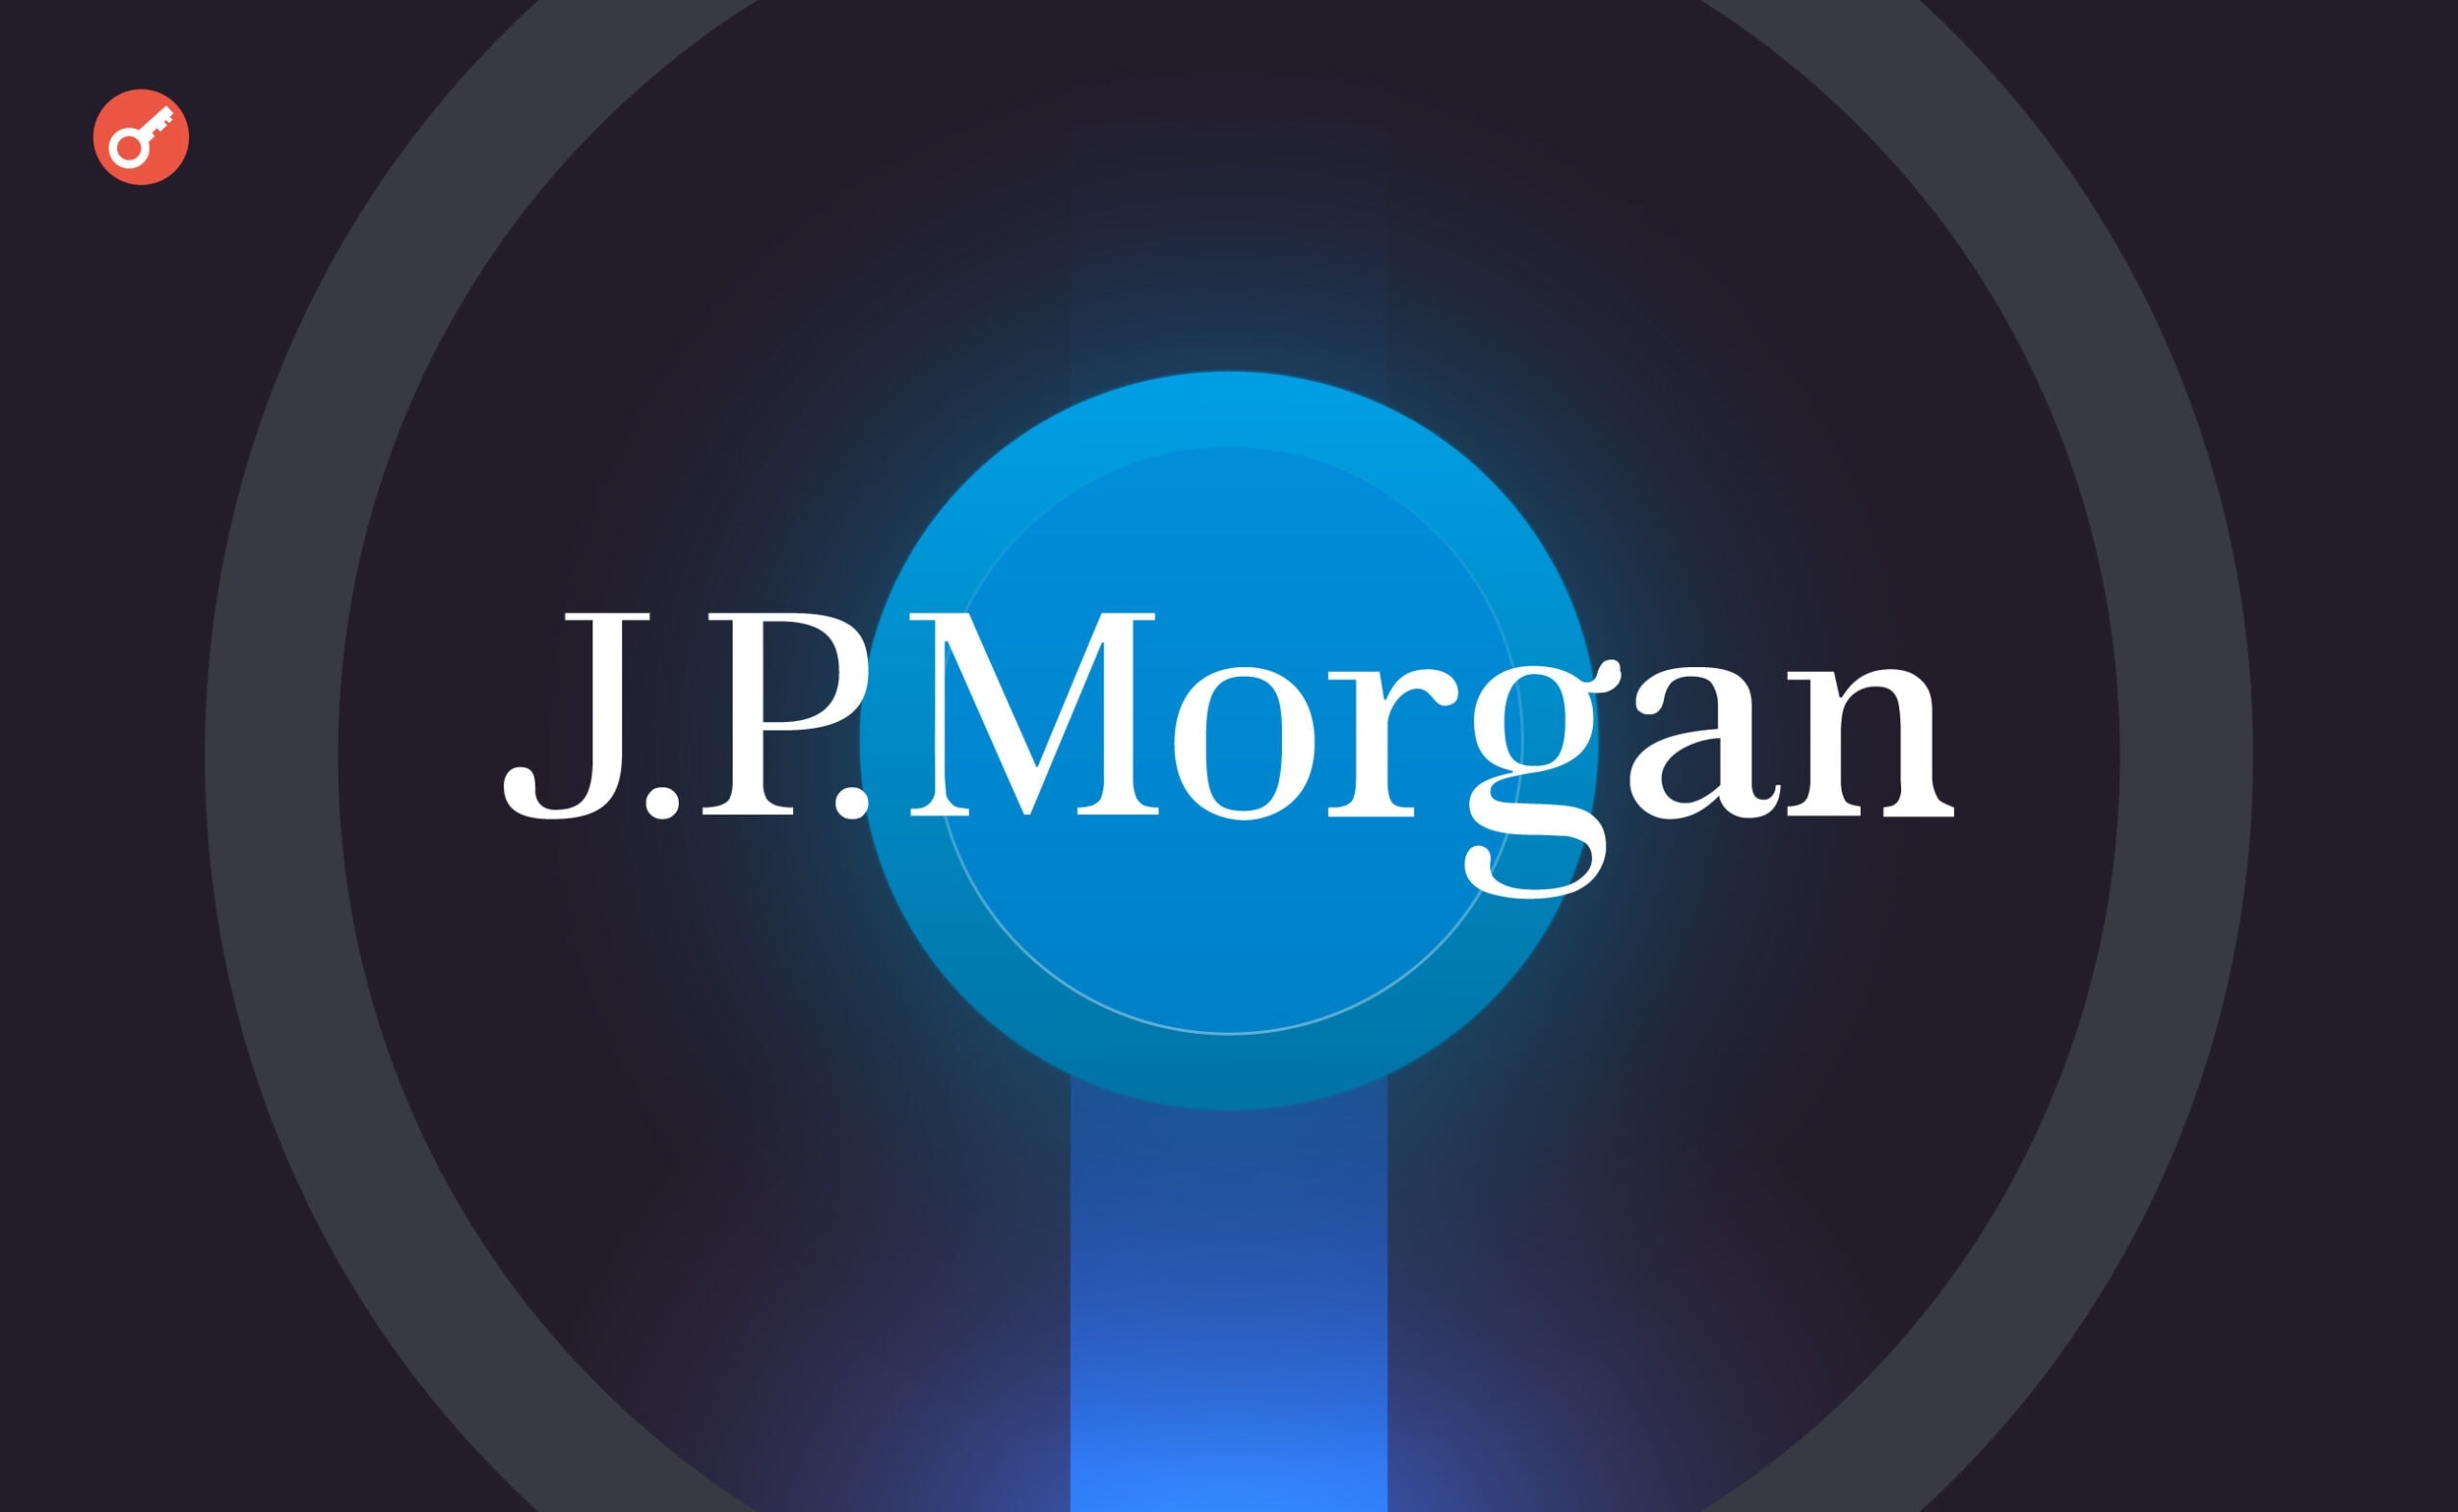 JPMorgan uruchamia platformę blockchain do tokenizacji aktywów. Główny kolaż wiadomości.